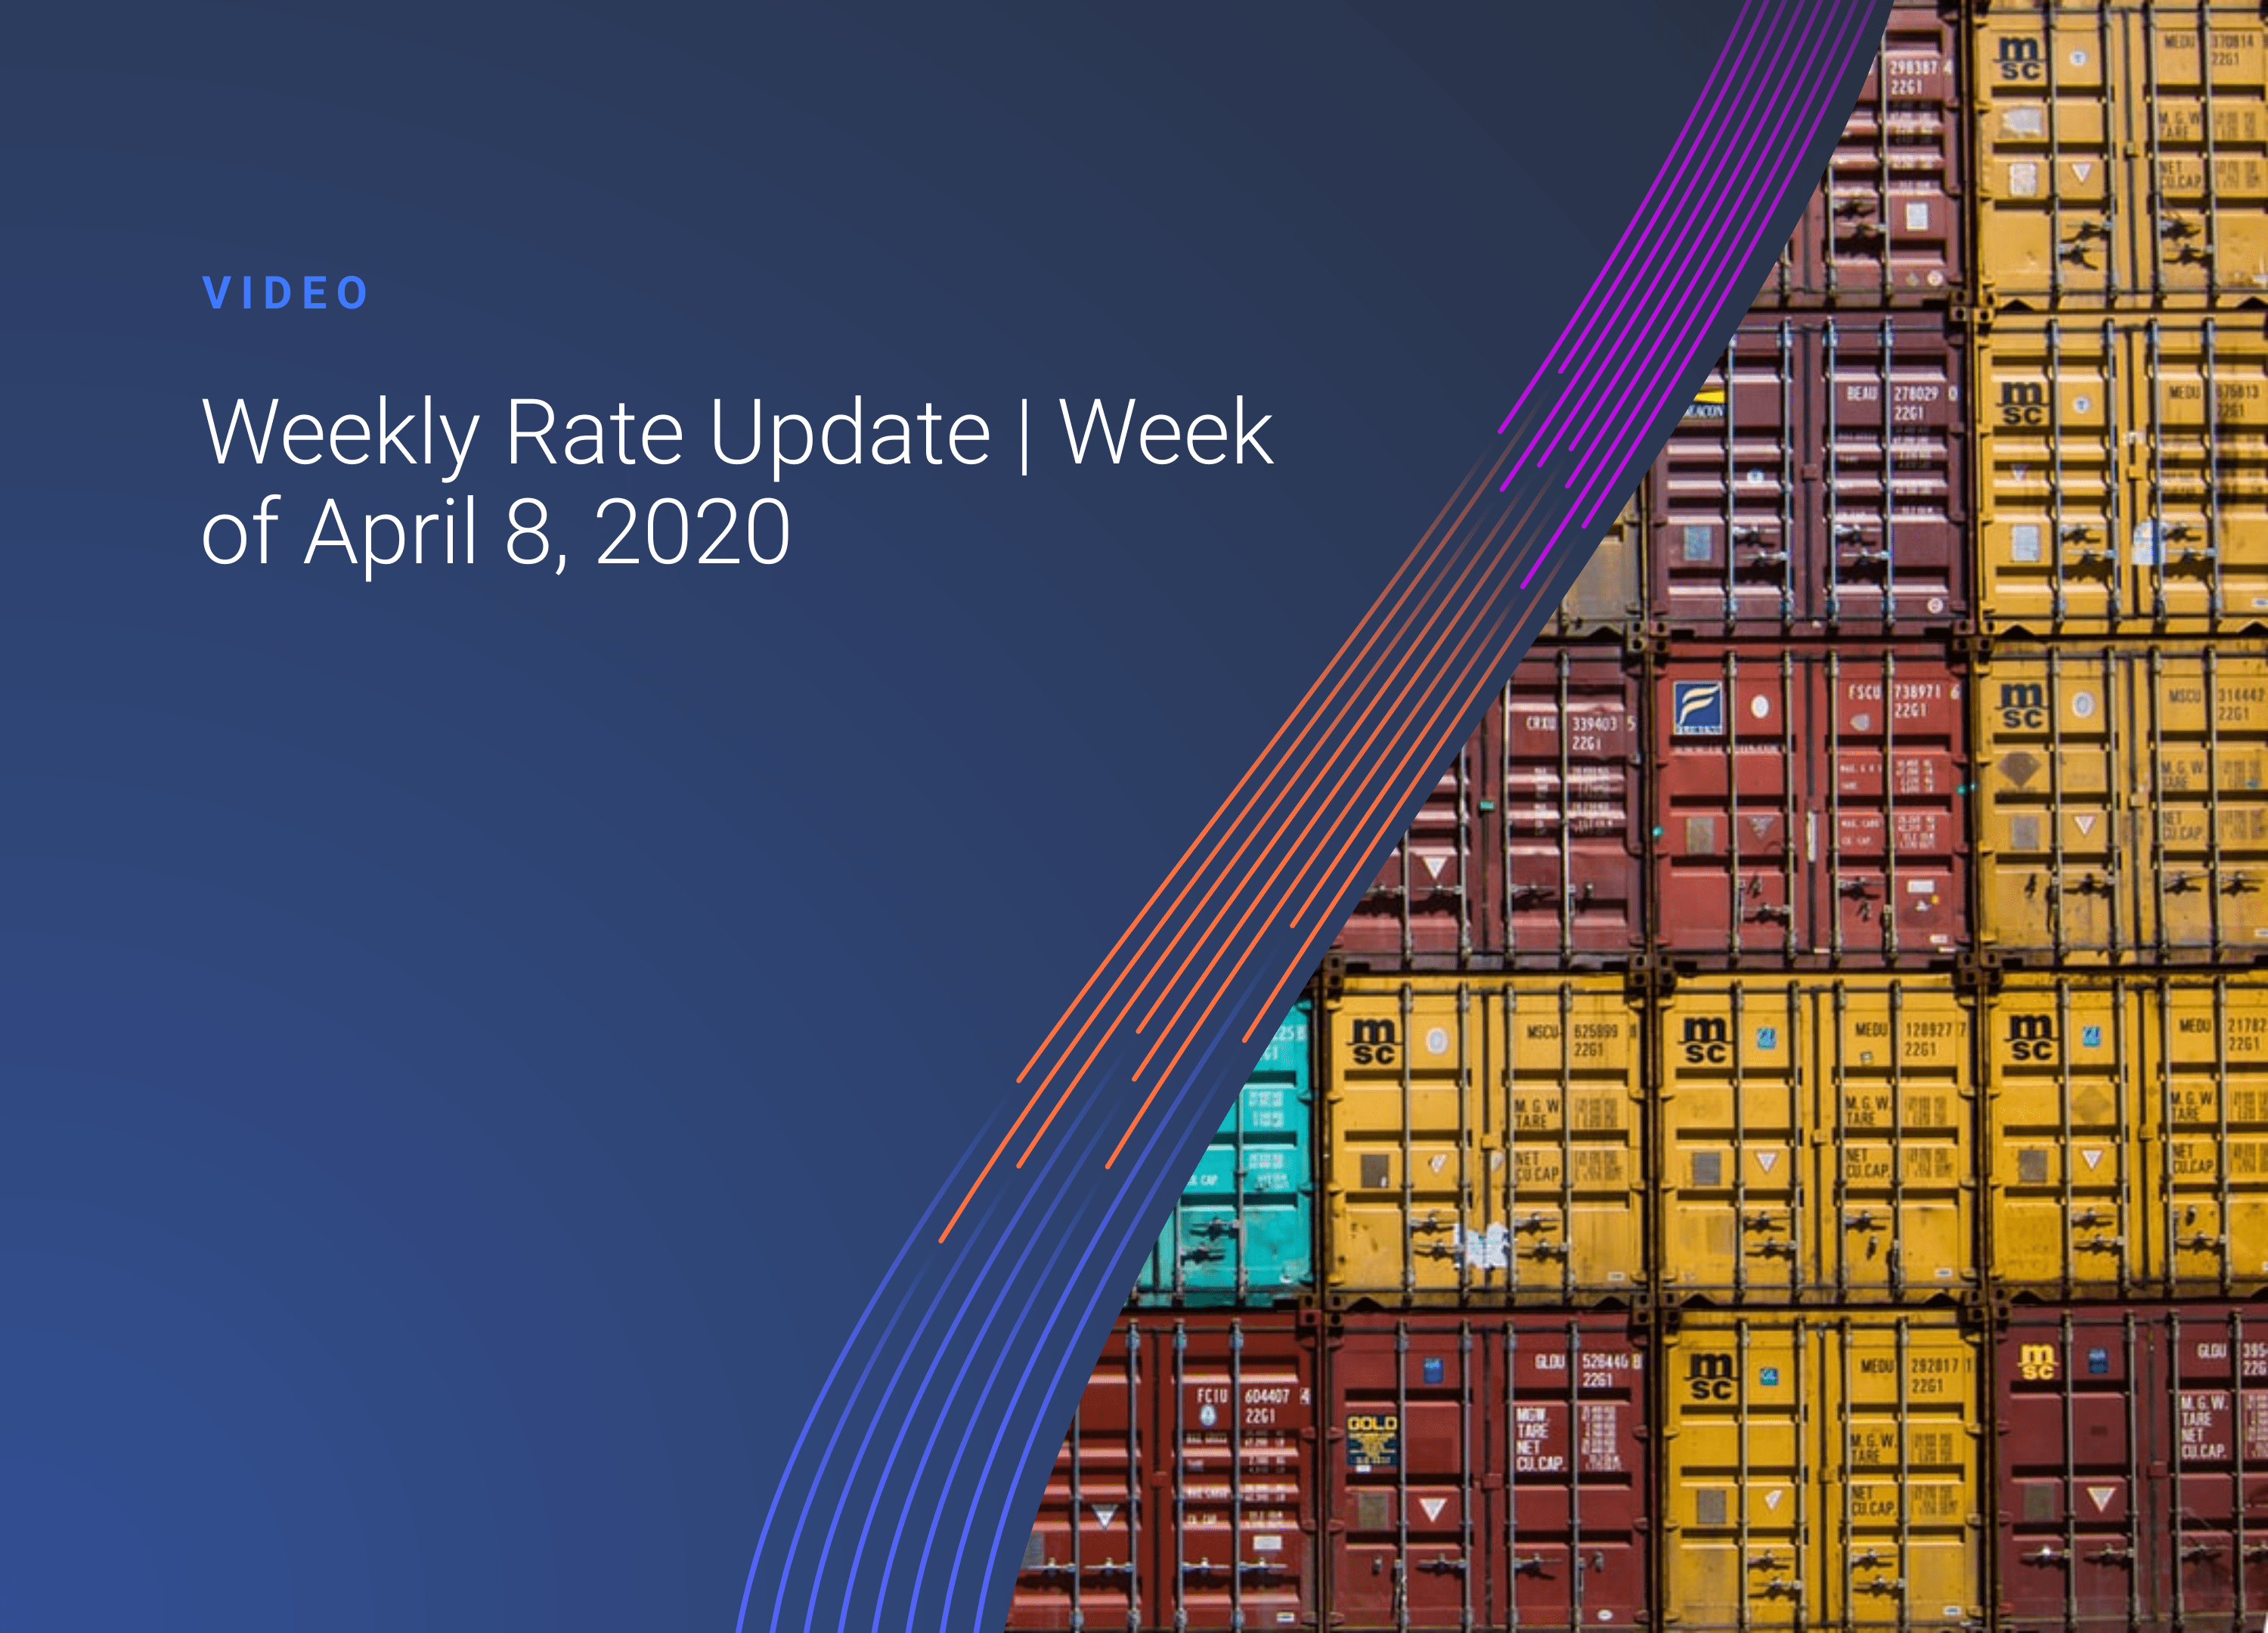 Weekly Rate Update: Week 15 Key Trade Movements